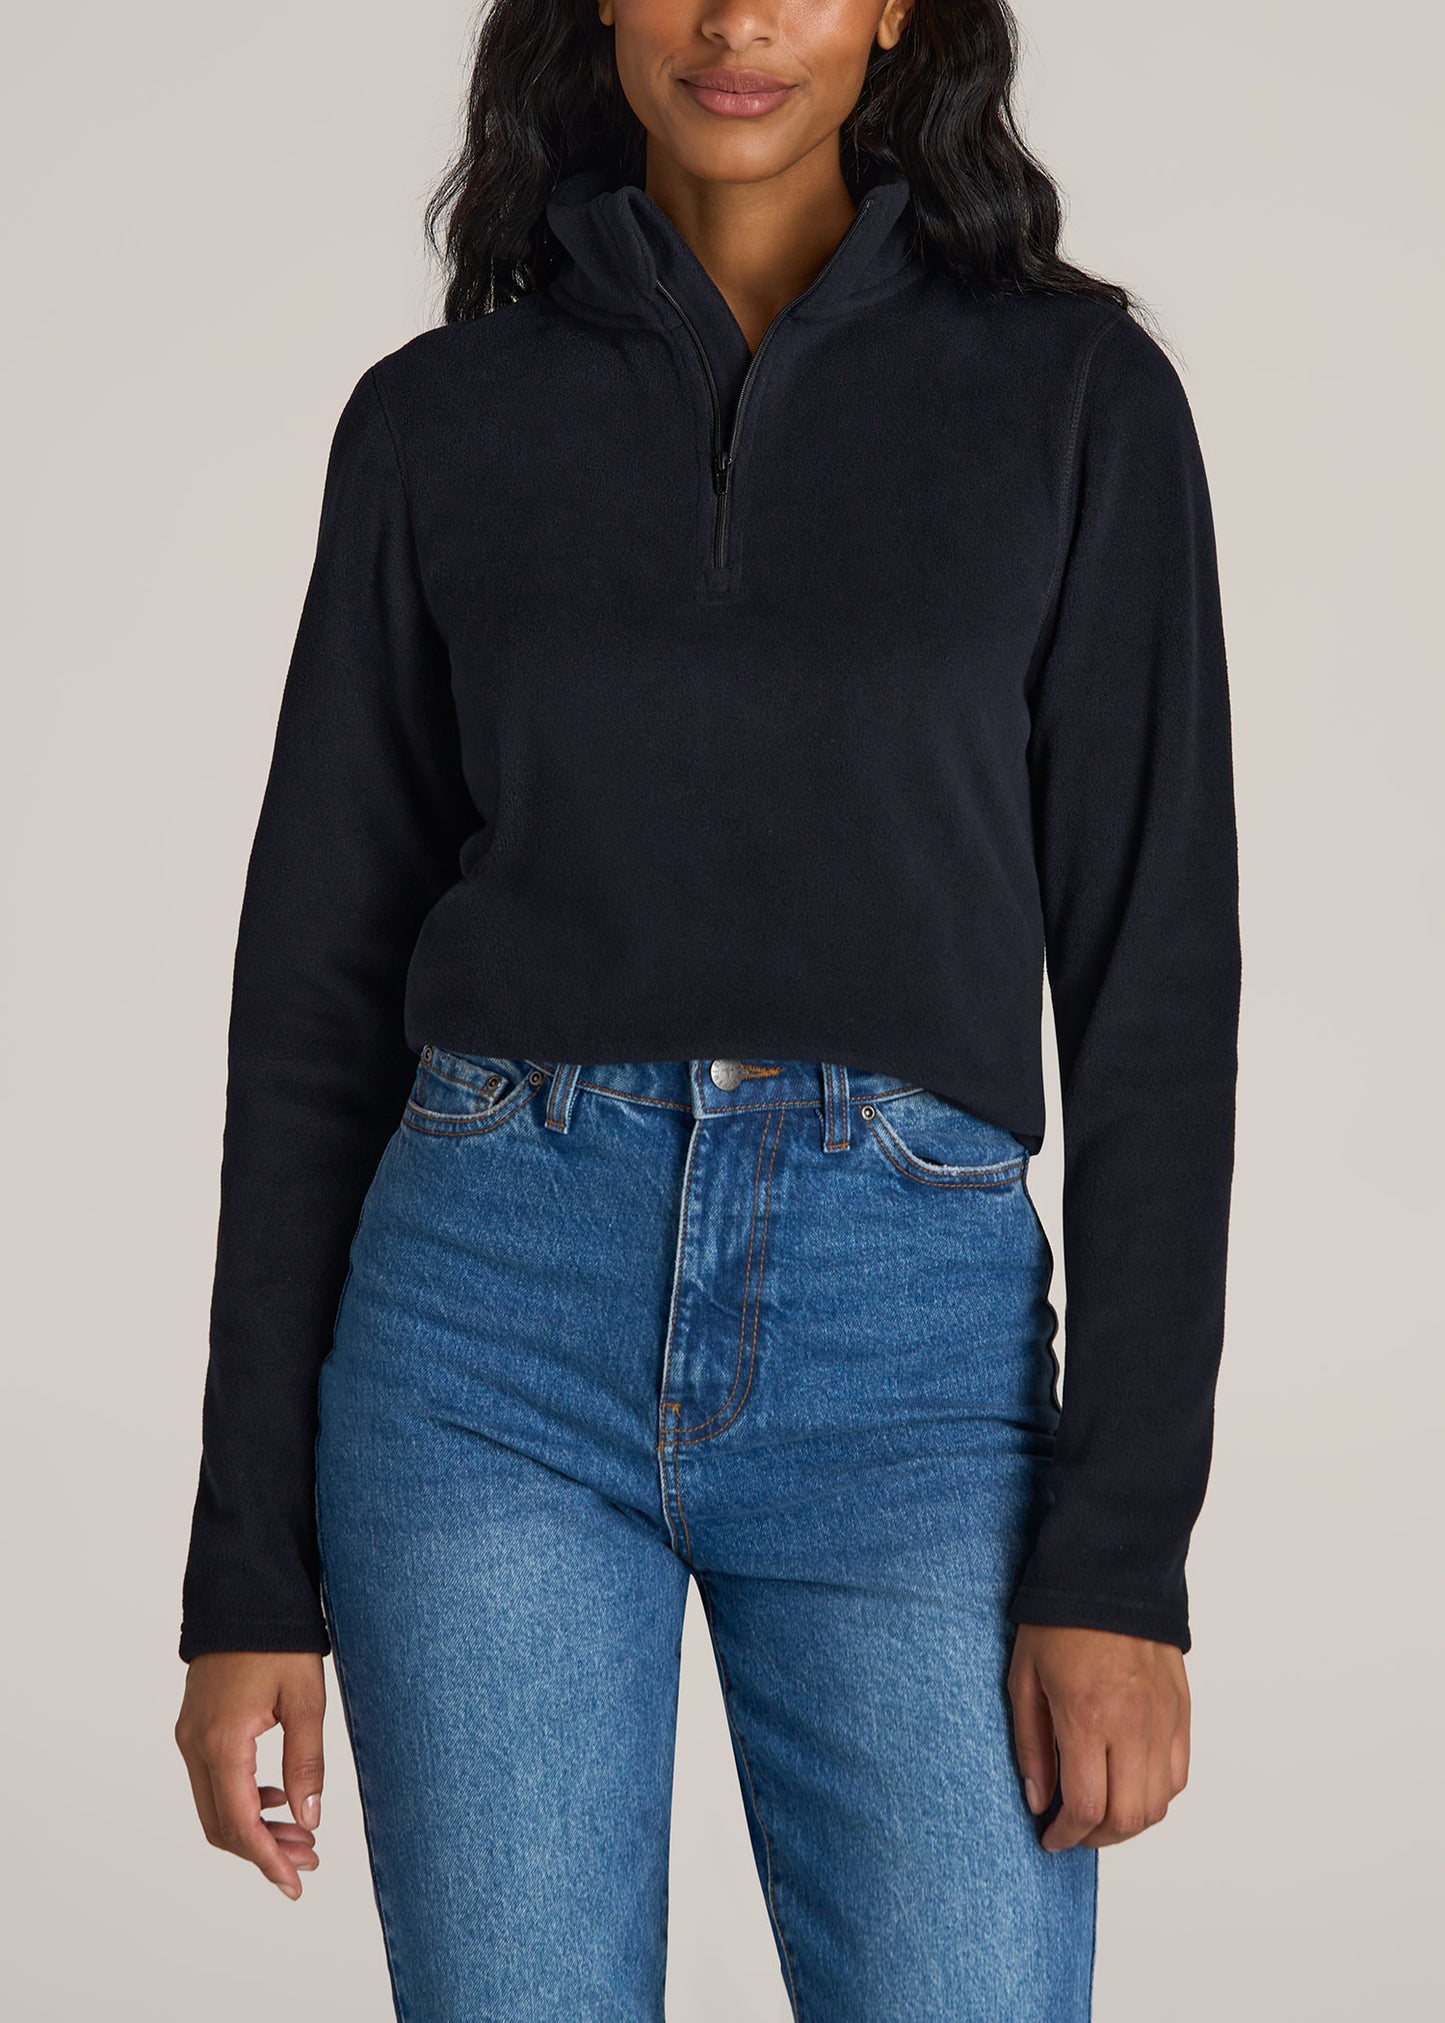 American-Tall-Women-Half-Zip-Polar-Fleece-sweatshirt-Black-front